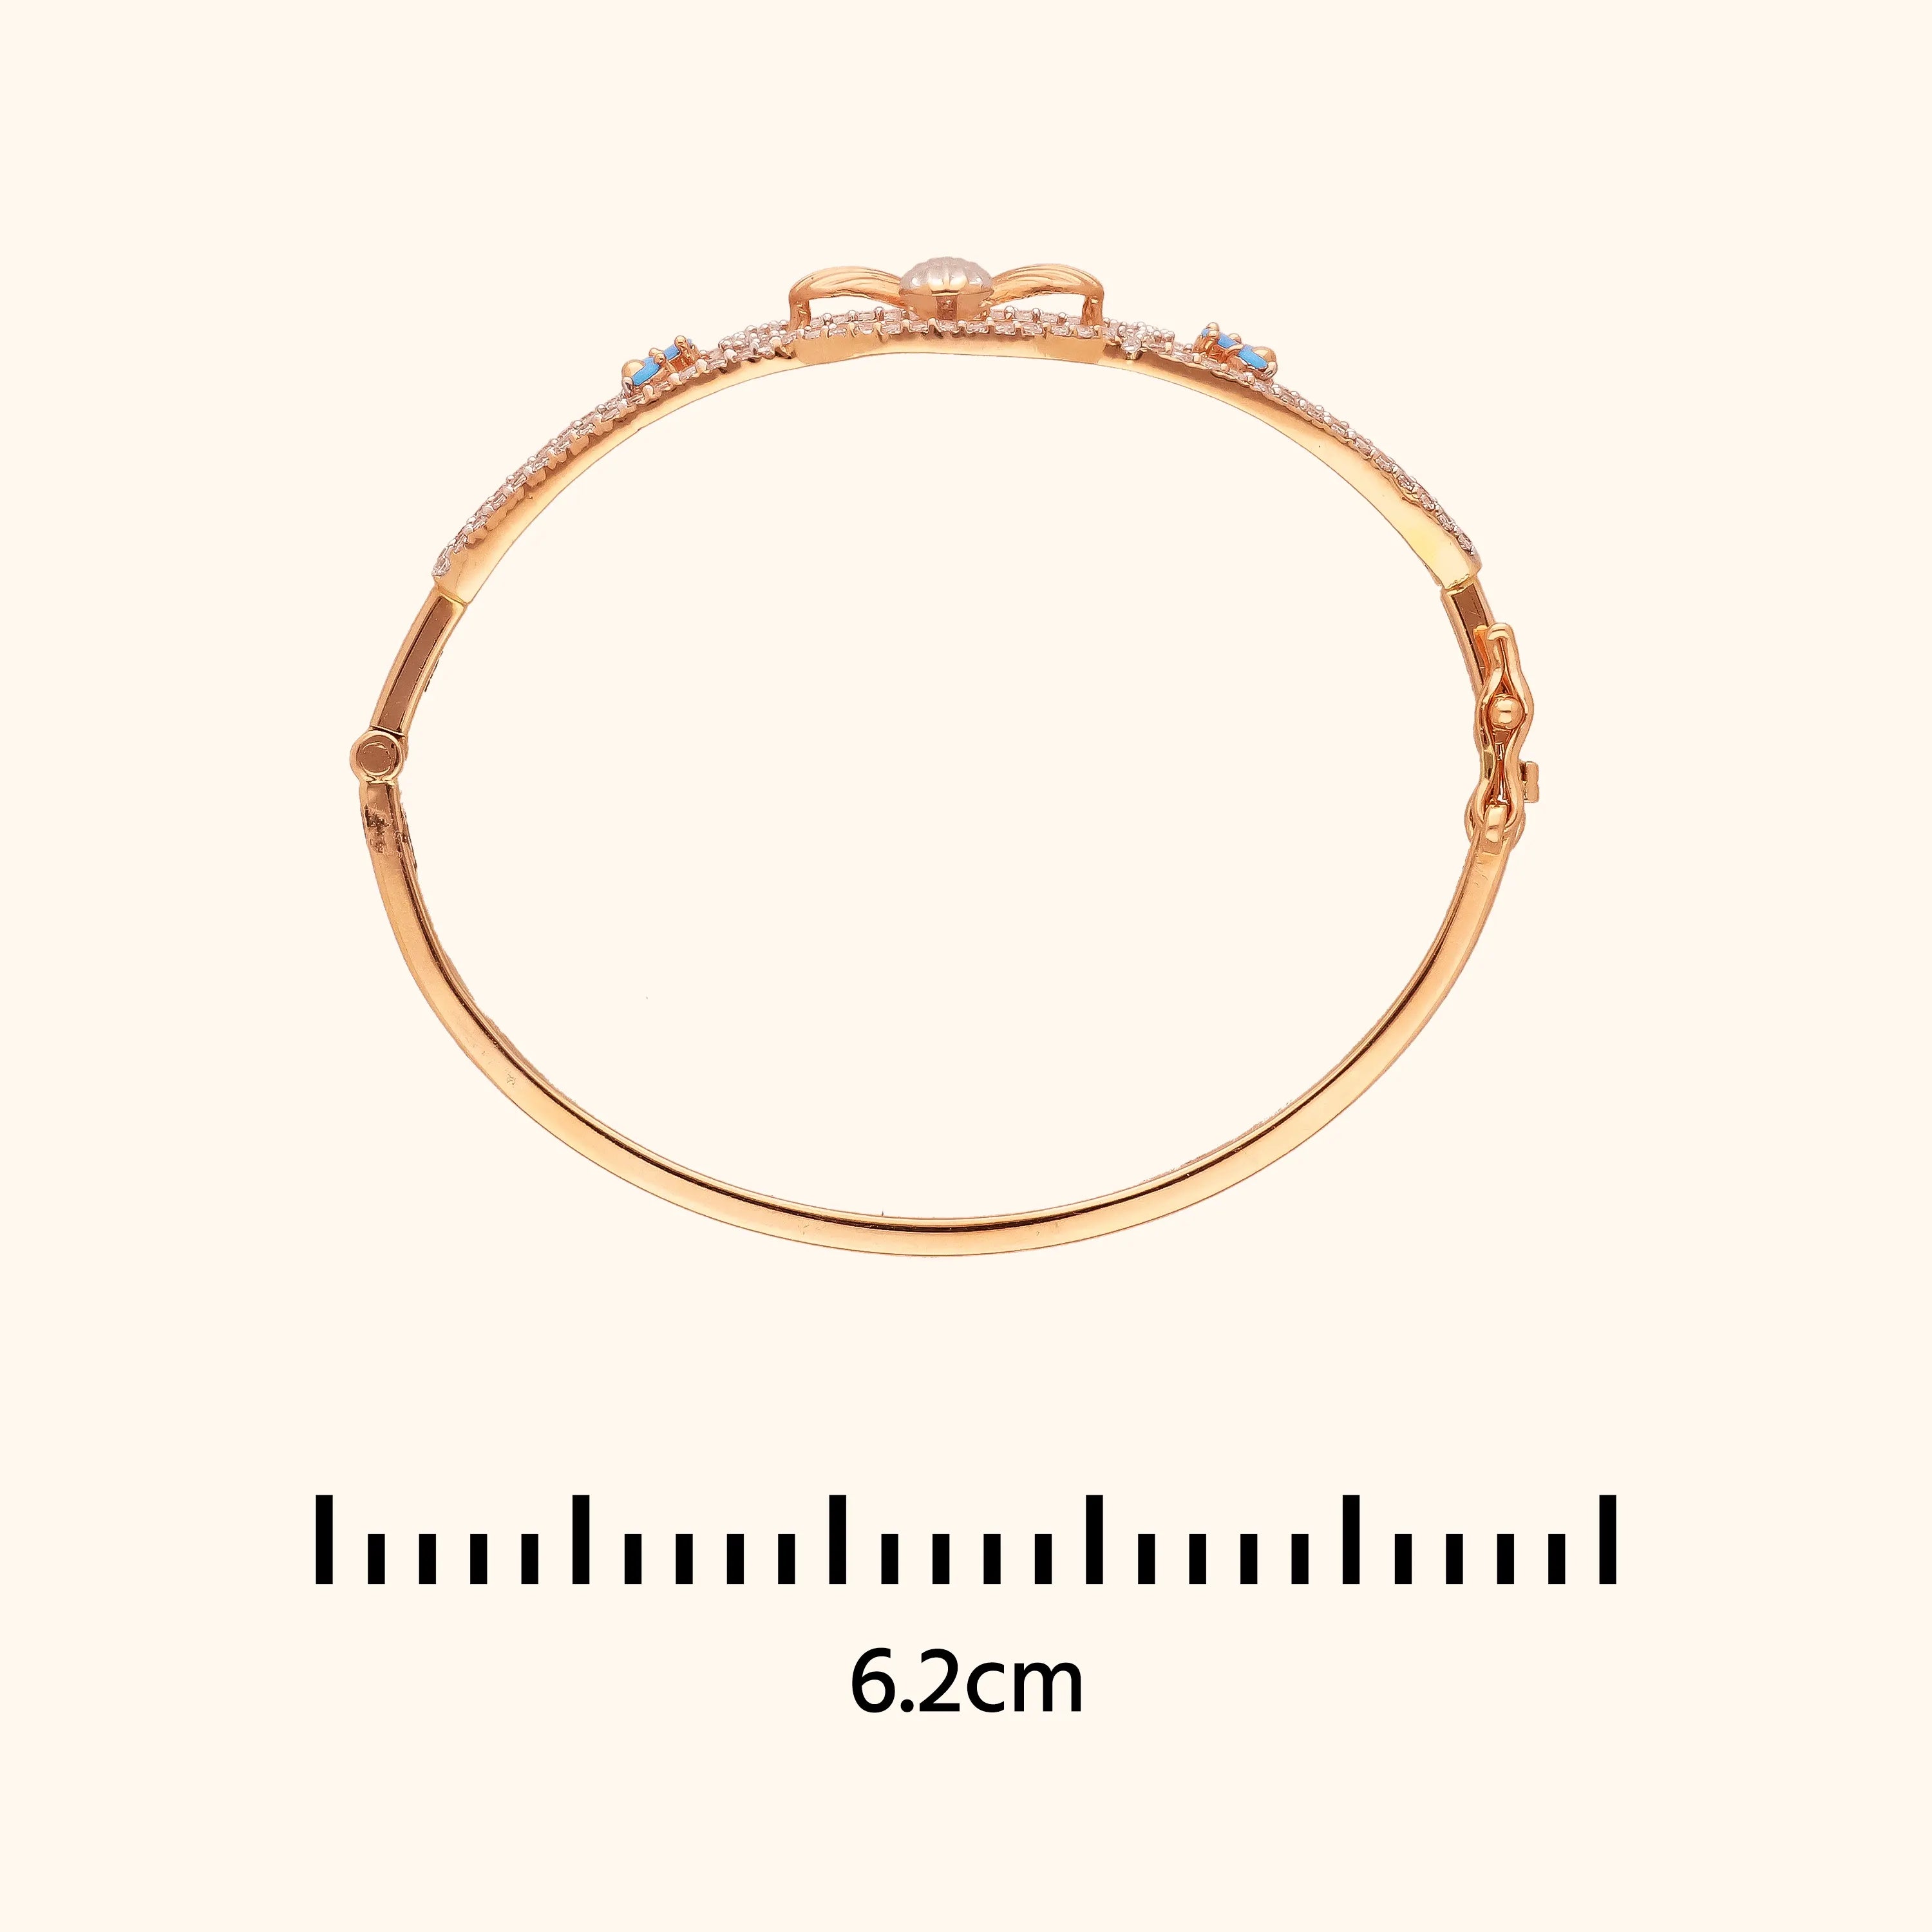 Floral Embrace - 18KT Gold Bracelet